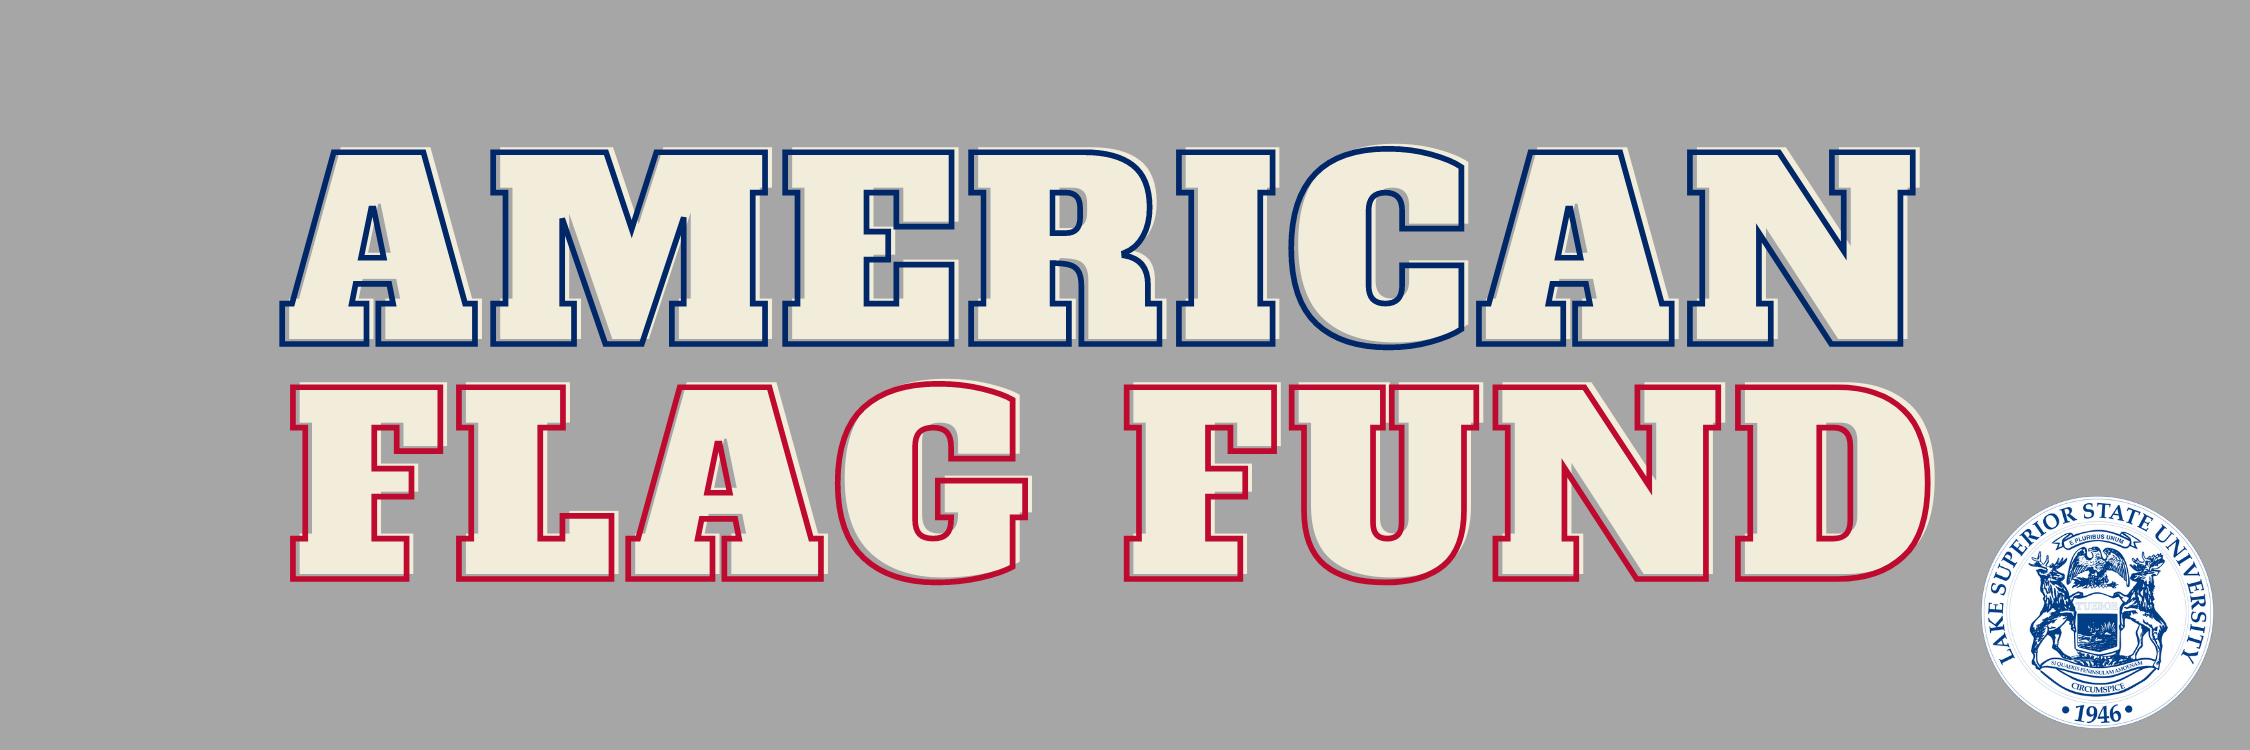 American Flag Fund